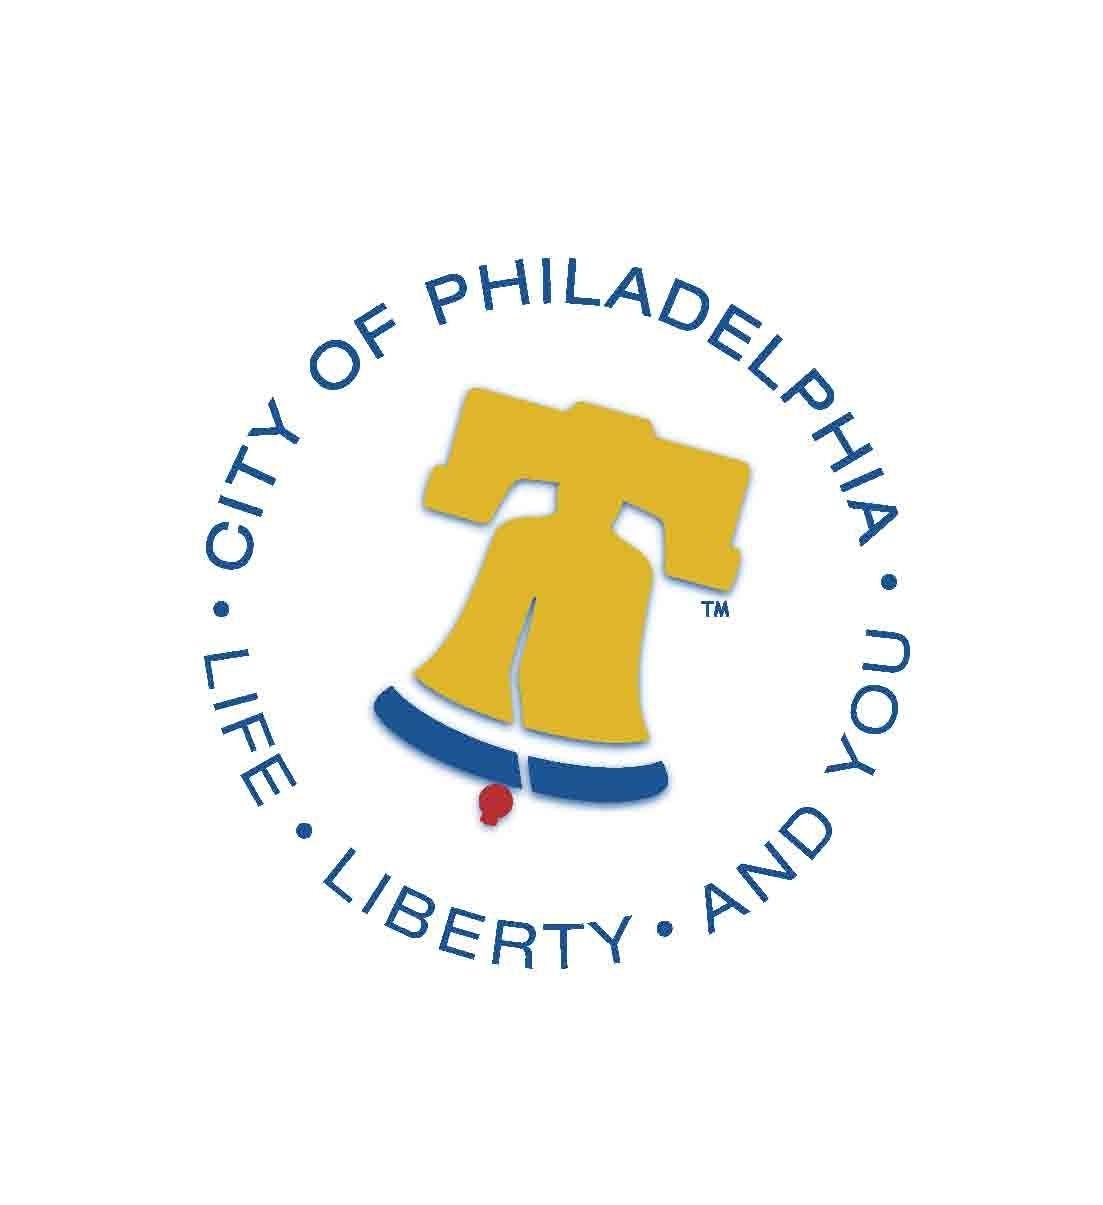 Yellow City Logo - Philadelphia city logo (1). Philadelphia Energy Authority